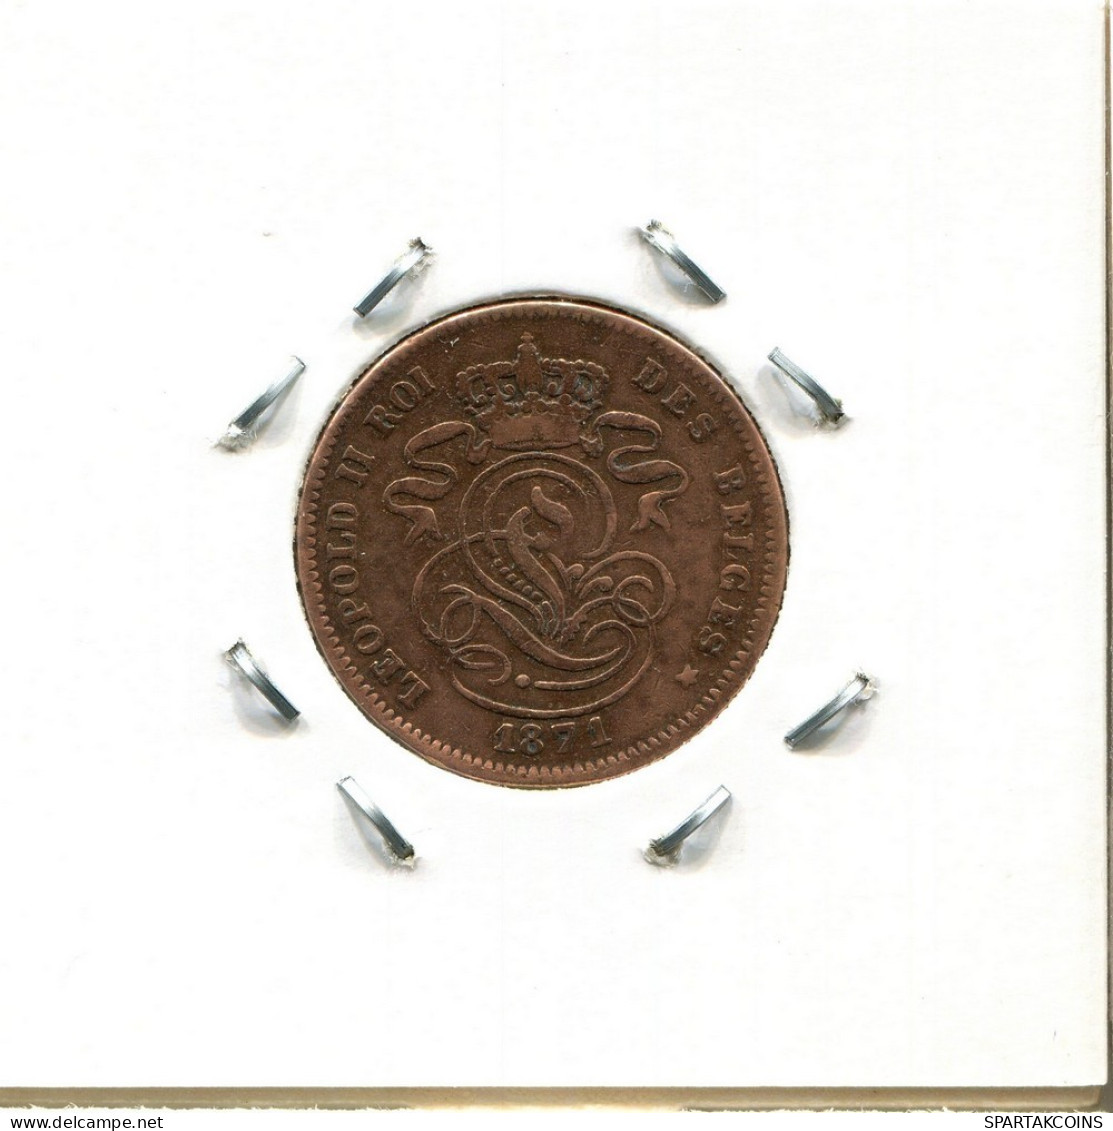 2 CENTIMES 1871 Französisch Text BELGIEN BELGIUM Münze #BA224.D.A - 2 Cent